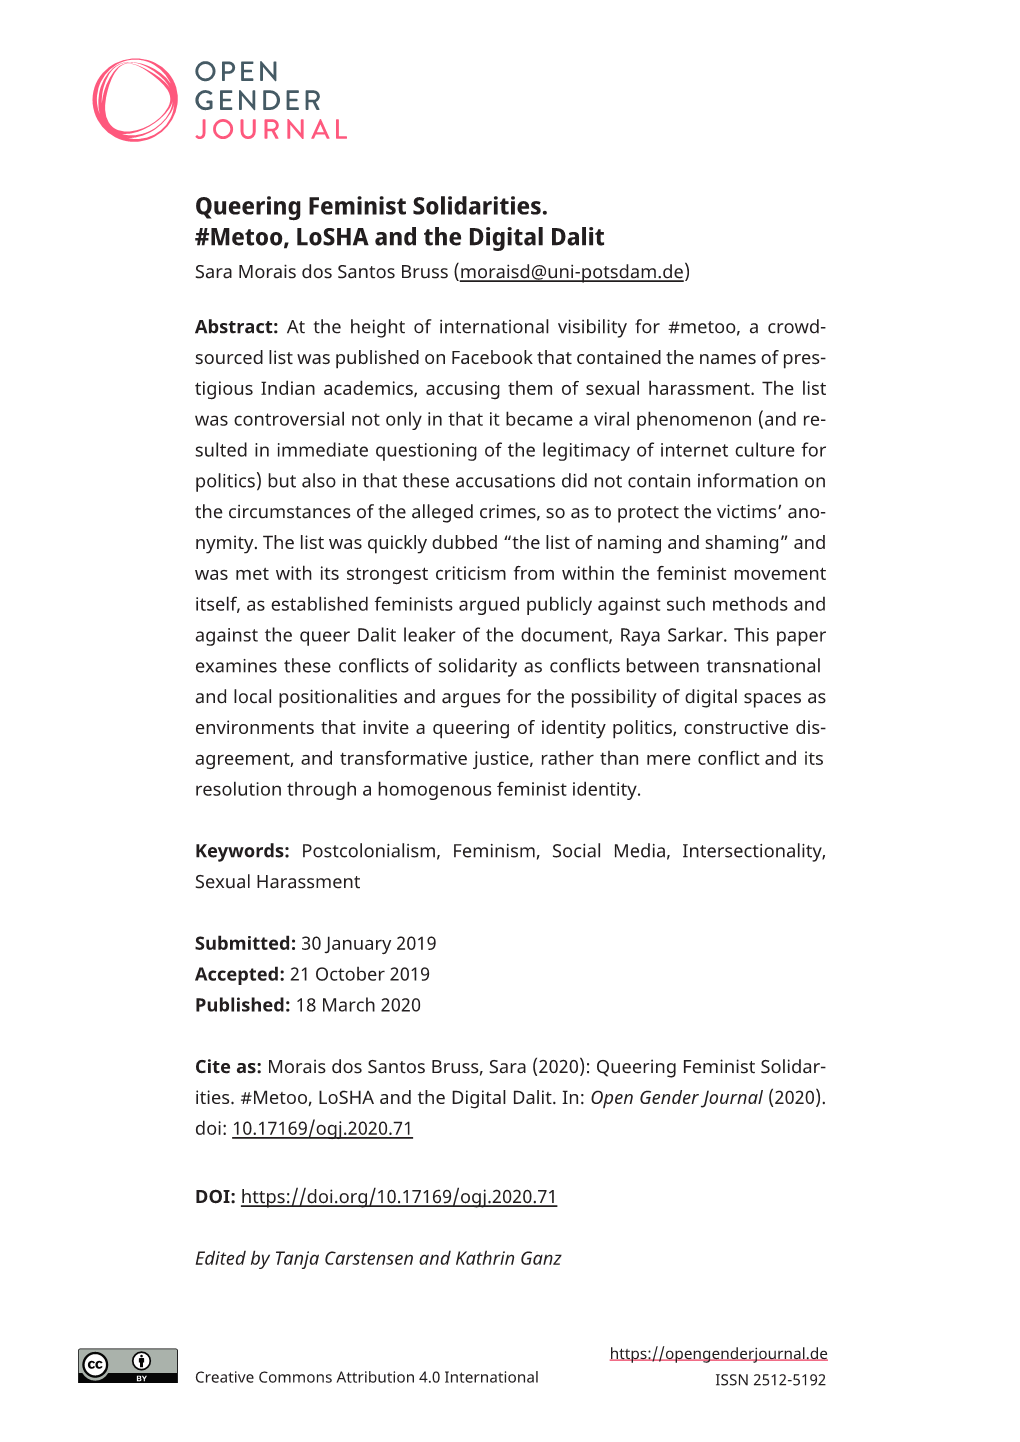 Queering Feminist Solidarities. #Metoo, Losha and the Digital Dalit Sara Morais Dos Santos Bruss (Moraisd@Uni-Potsdam.De)